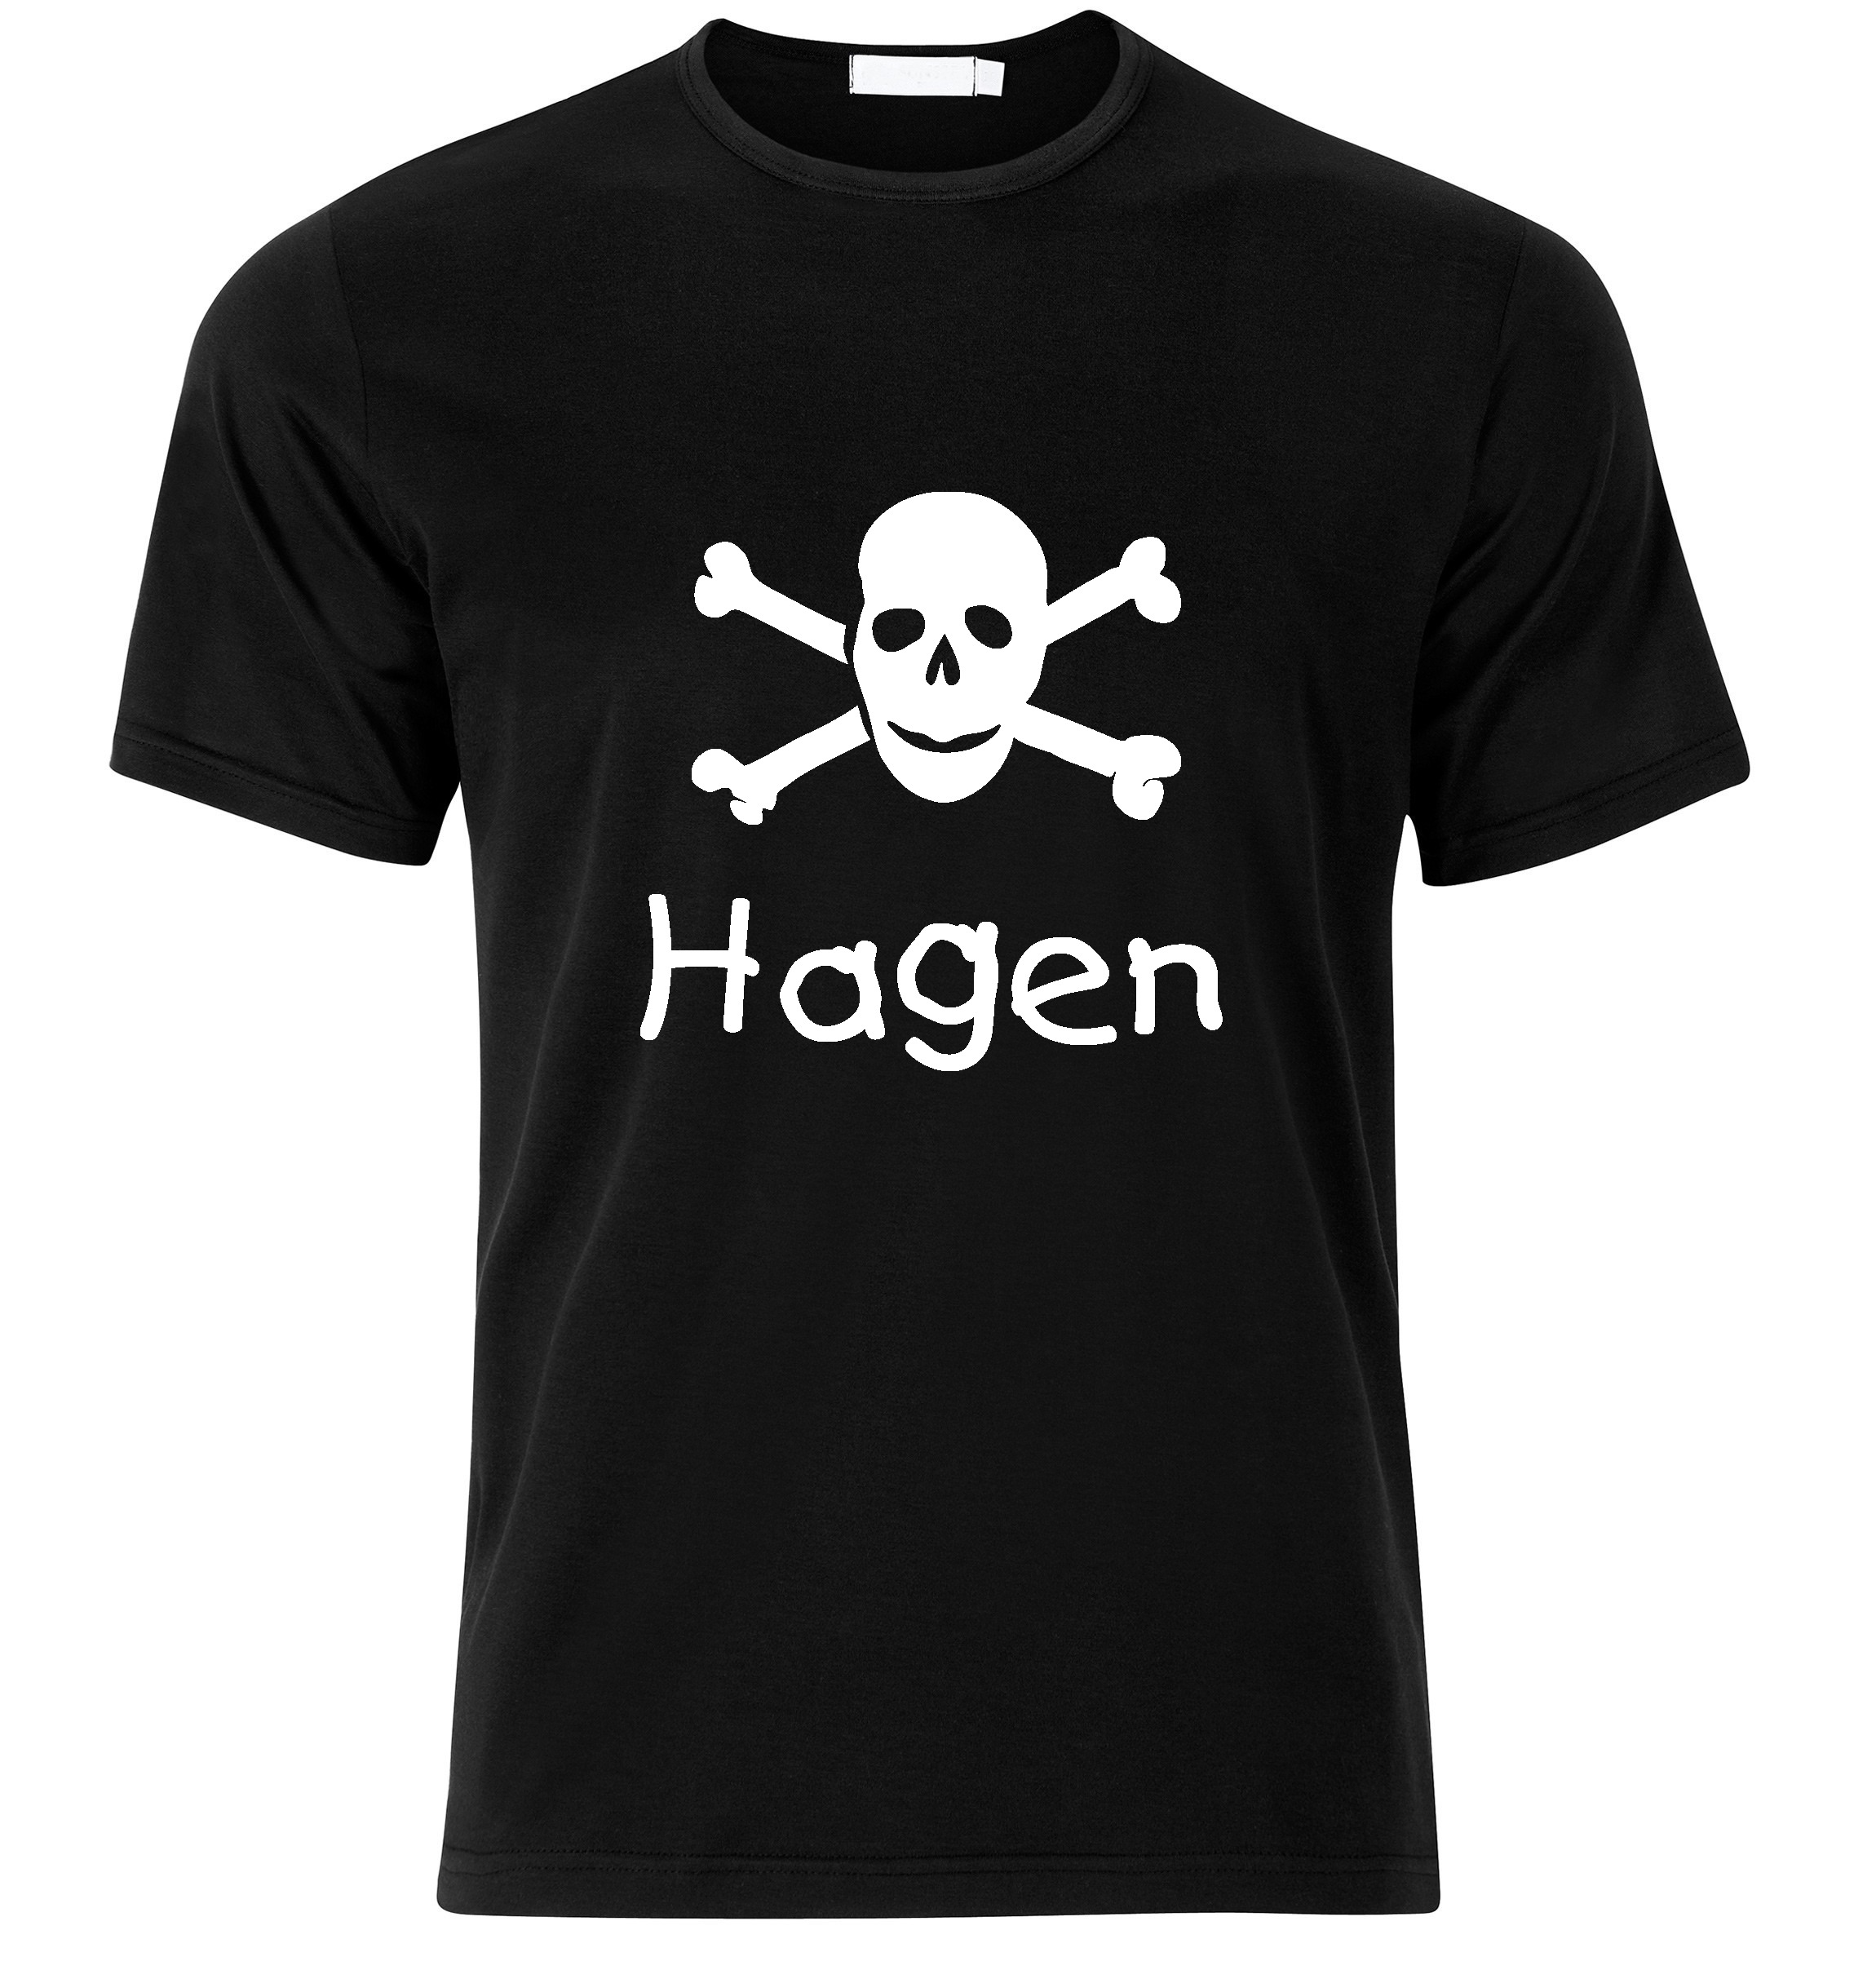 T-Shirt Hagen Jolly Roger, Totenkopf